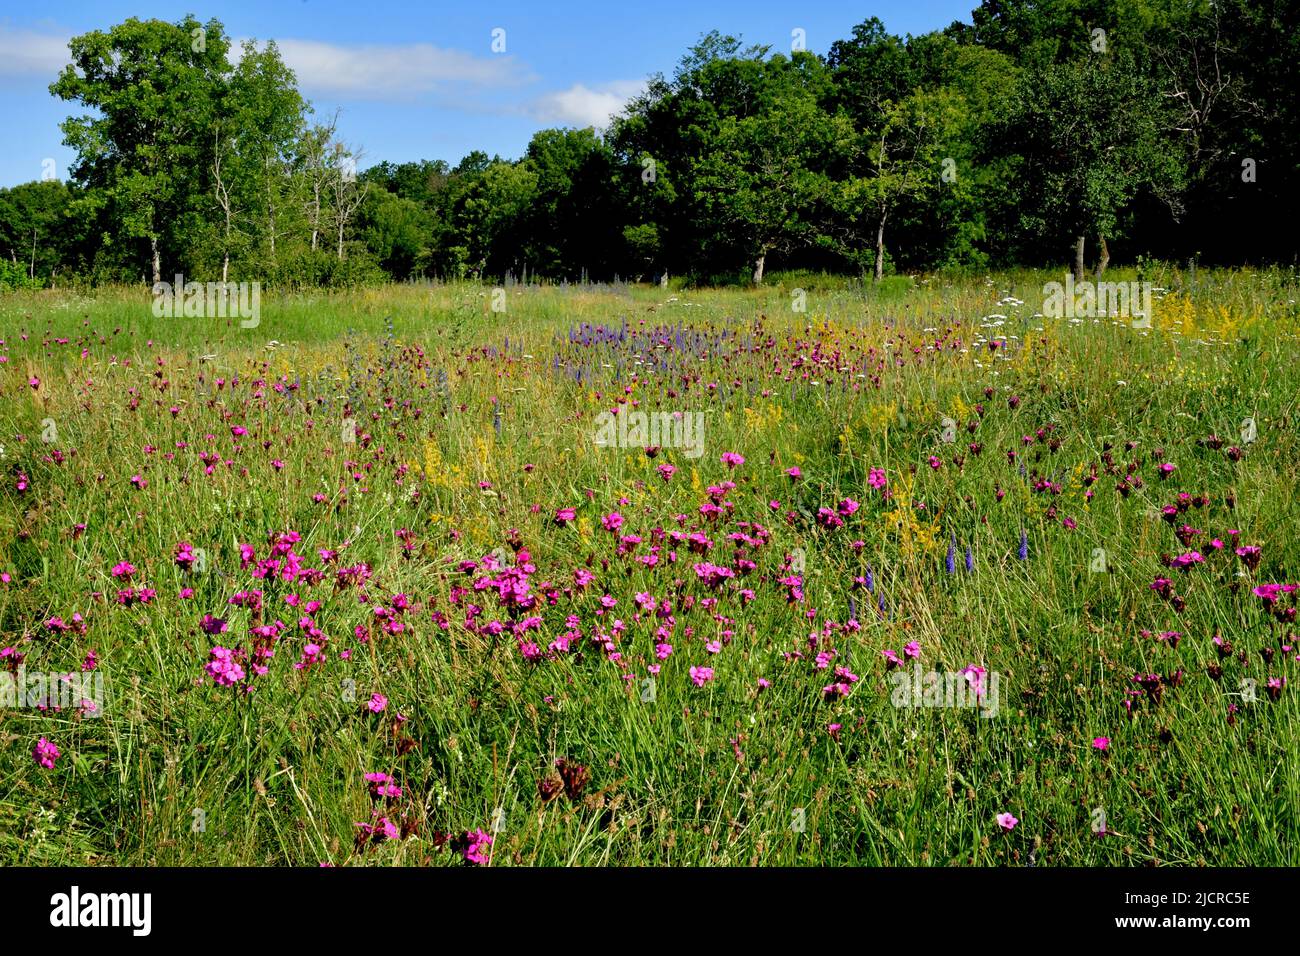 Densa población de plantas silvestres en flor en praderas calcáreas. Alemania Foto de stock